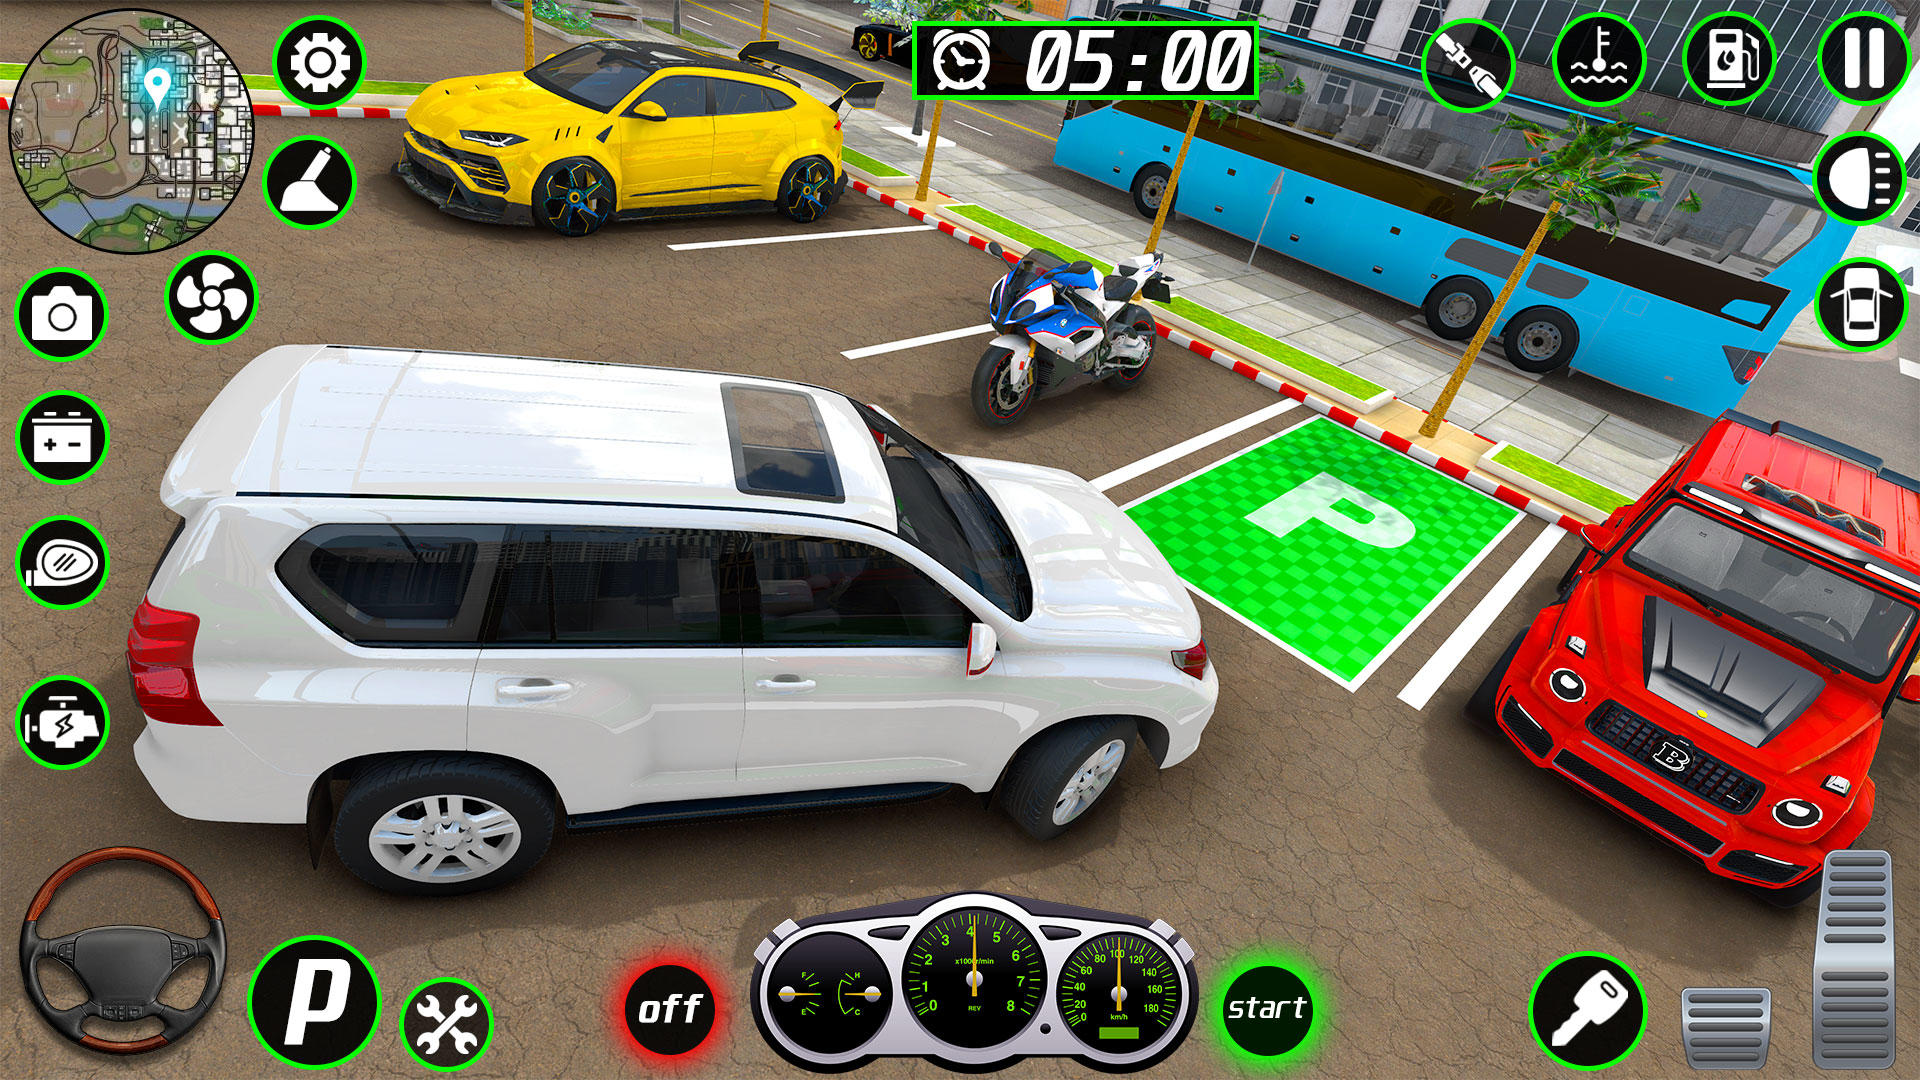 Jogo moderno de estacionamento de carros de corrida versão móvel